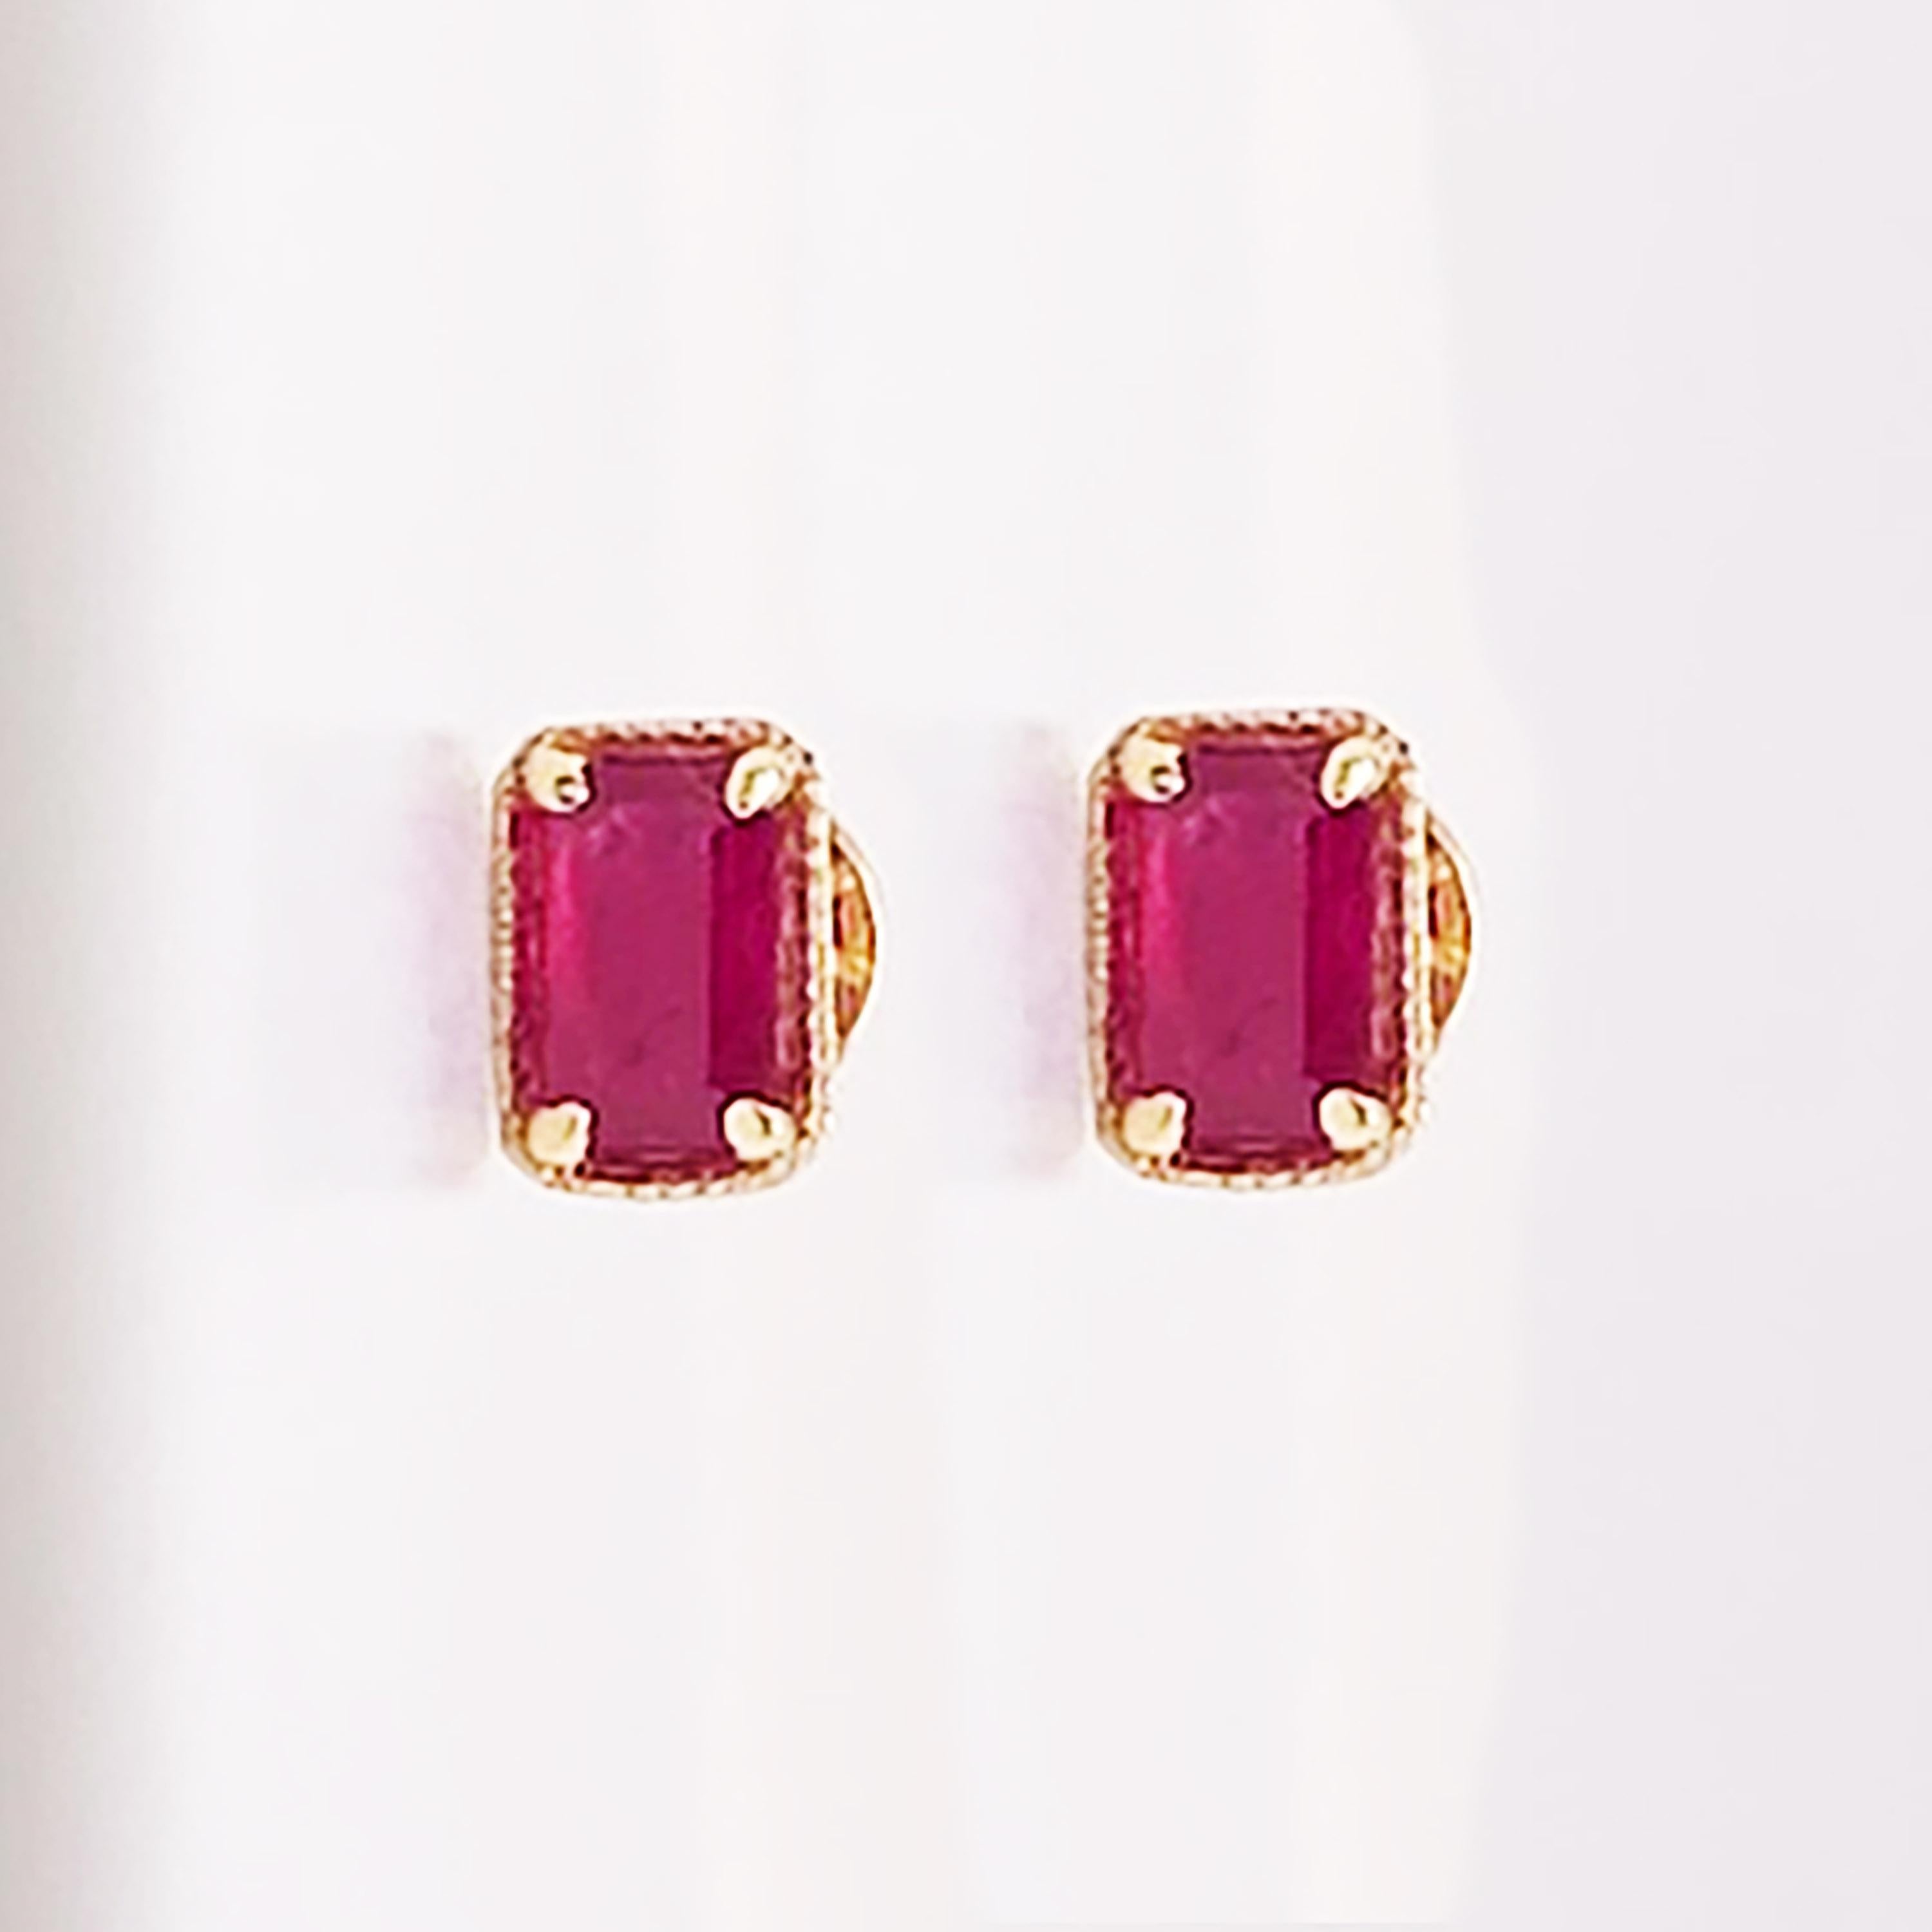 emerald cut ruby earrings